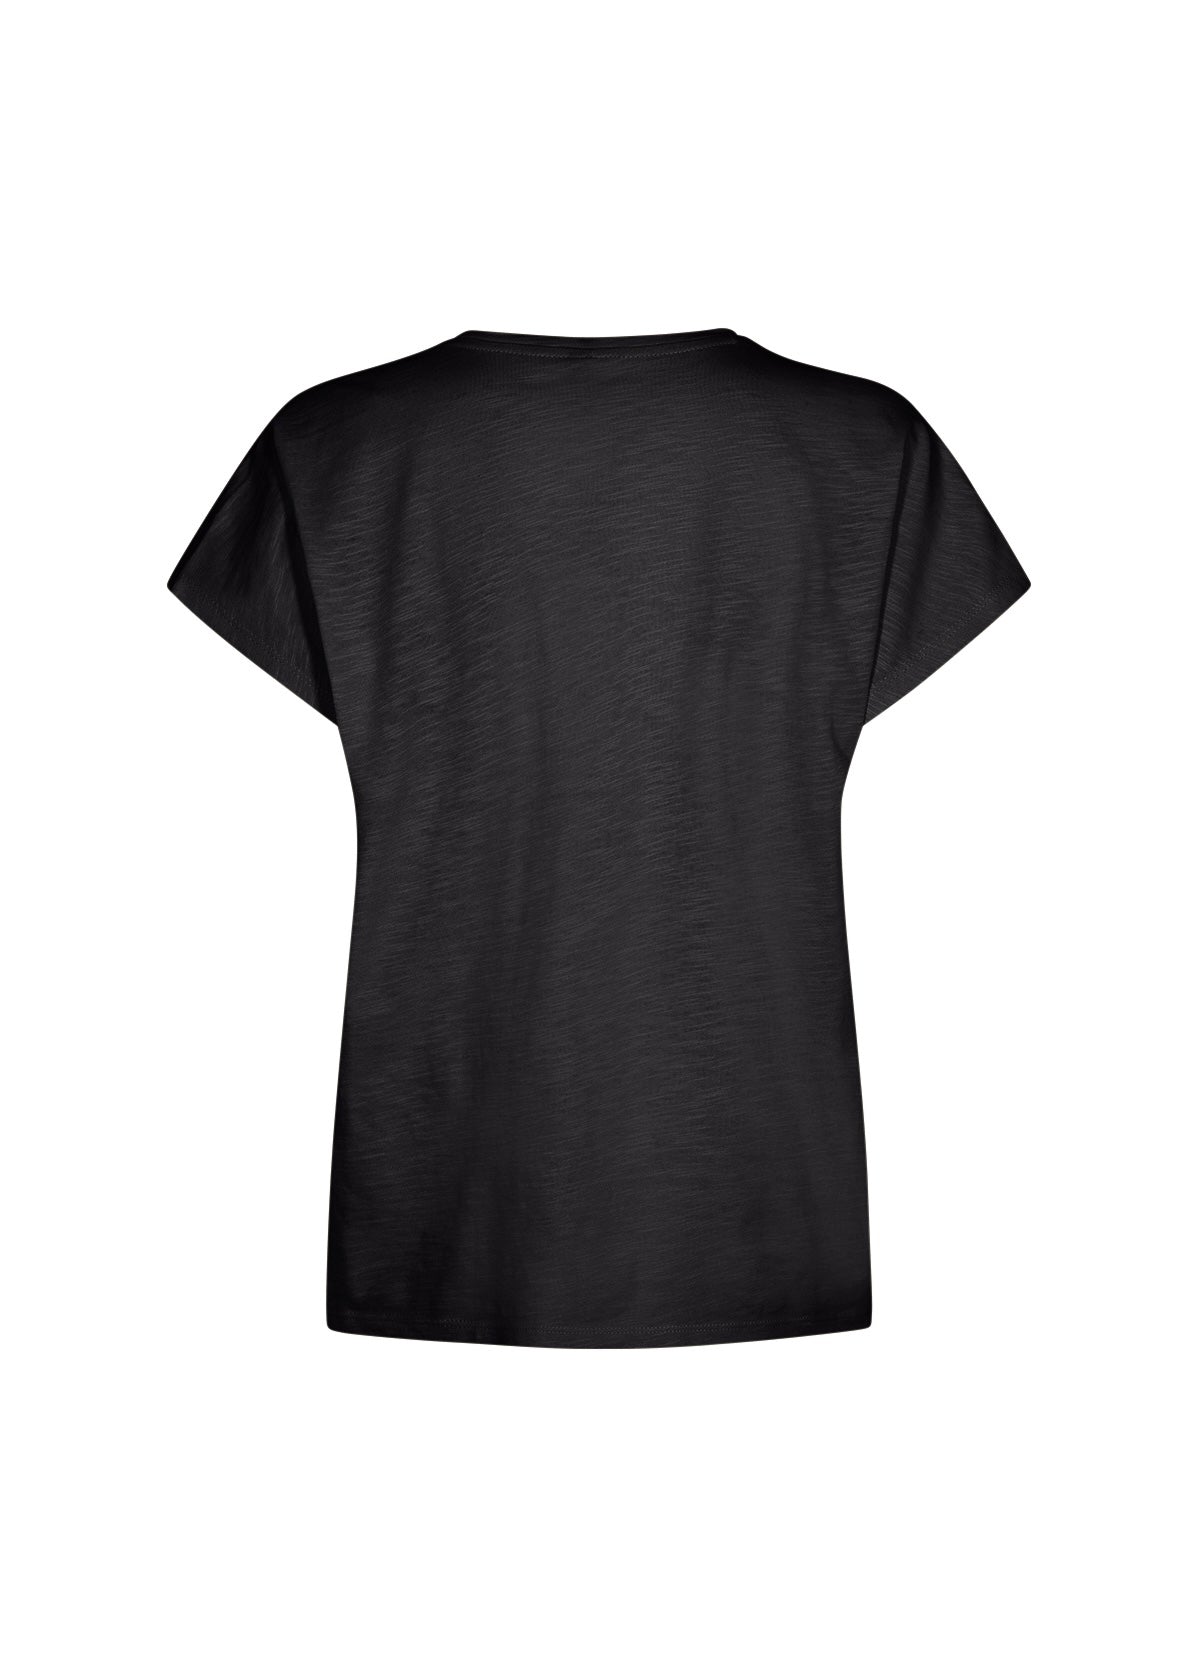 SoyaConcept Babette 32 T Shirt - Black